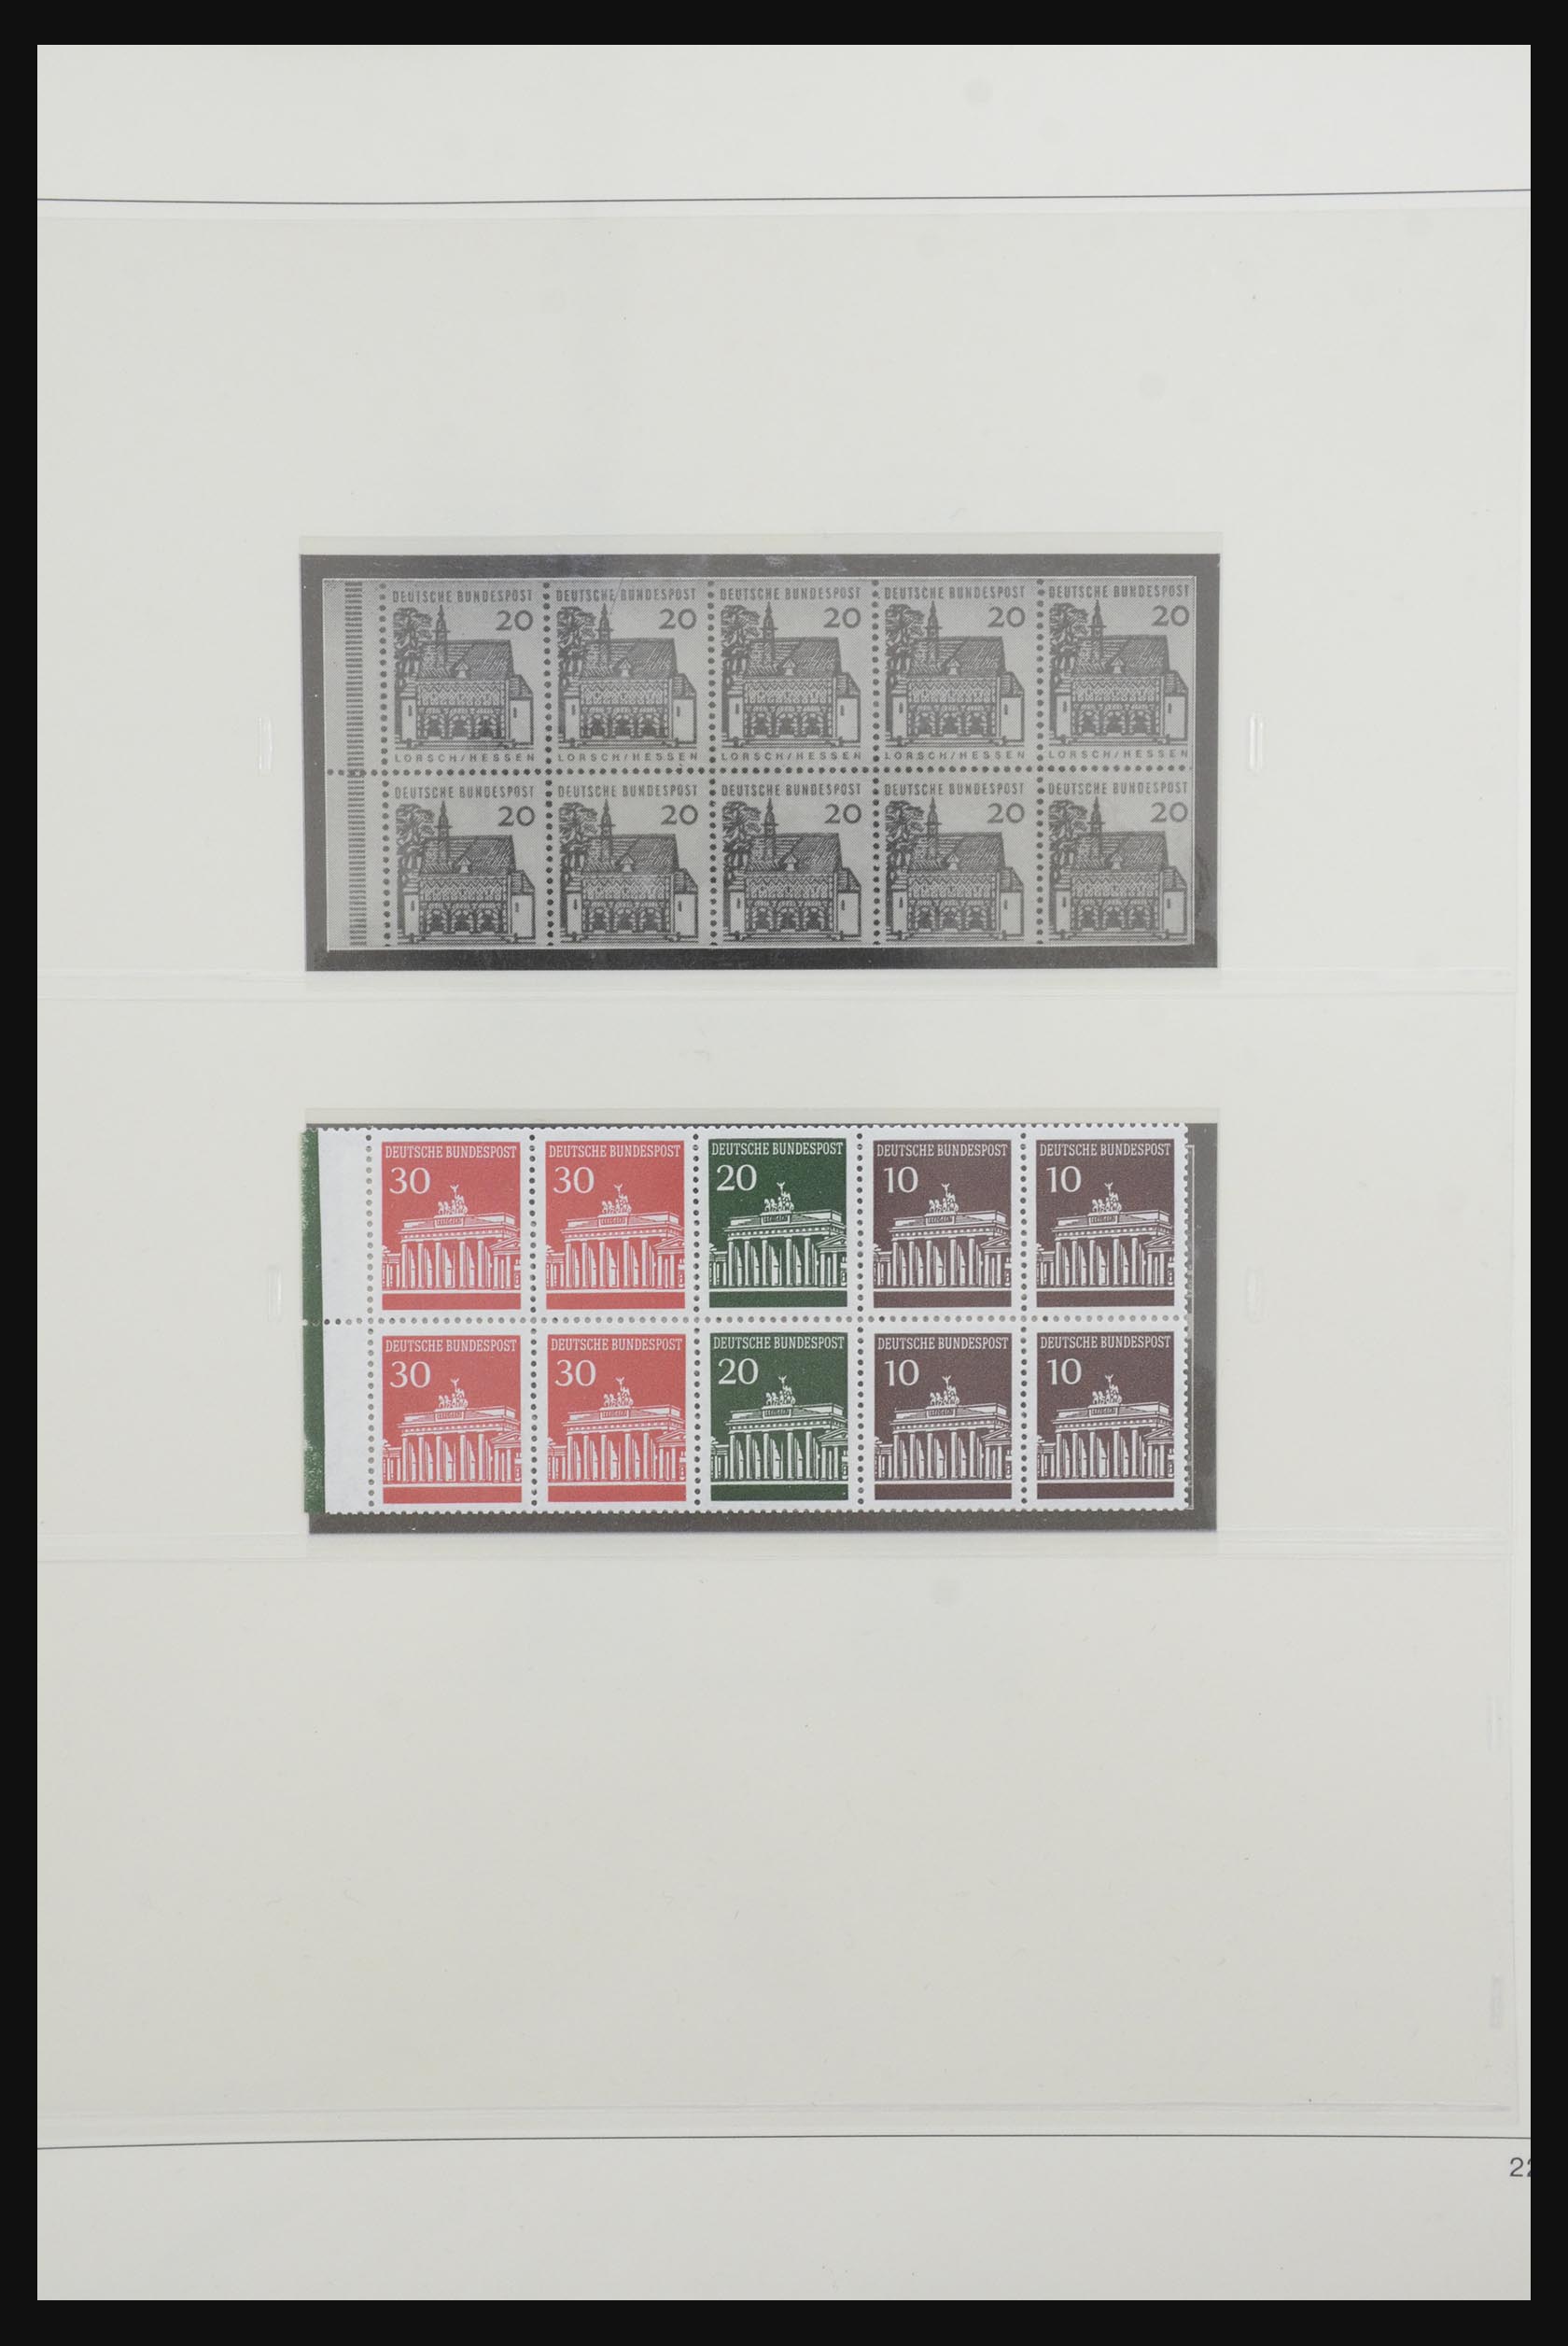 31842 030 - 31842 Bundespost combinations 1951-2003.